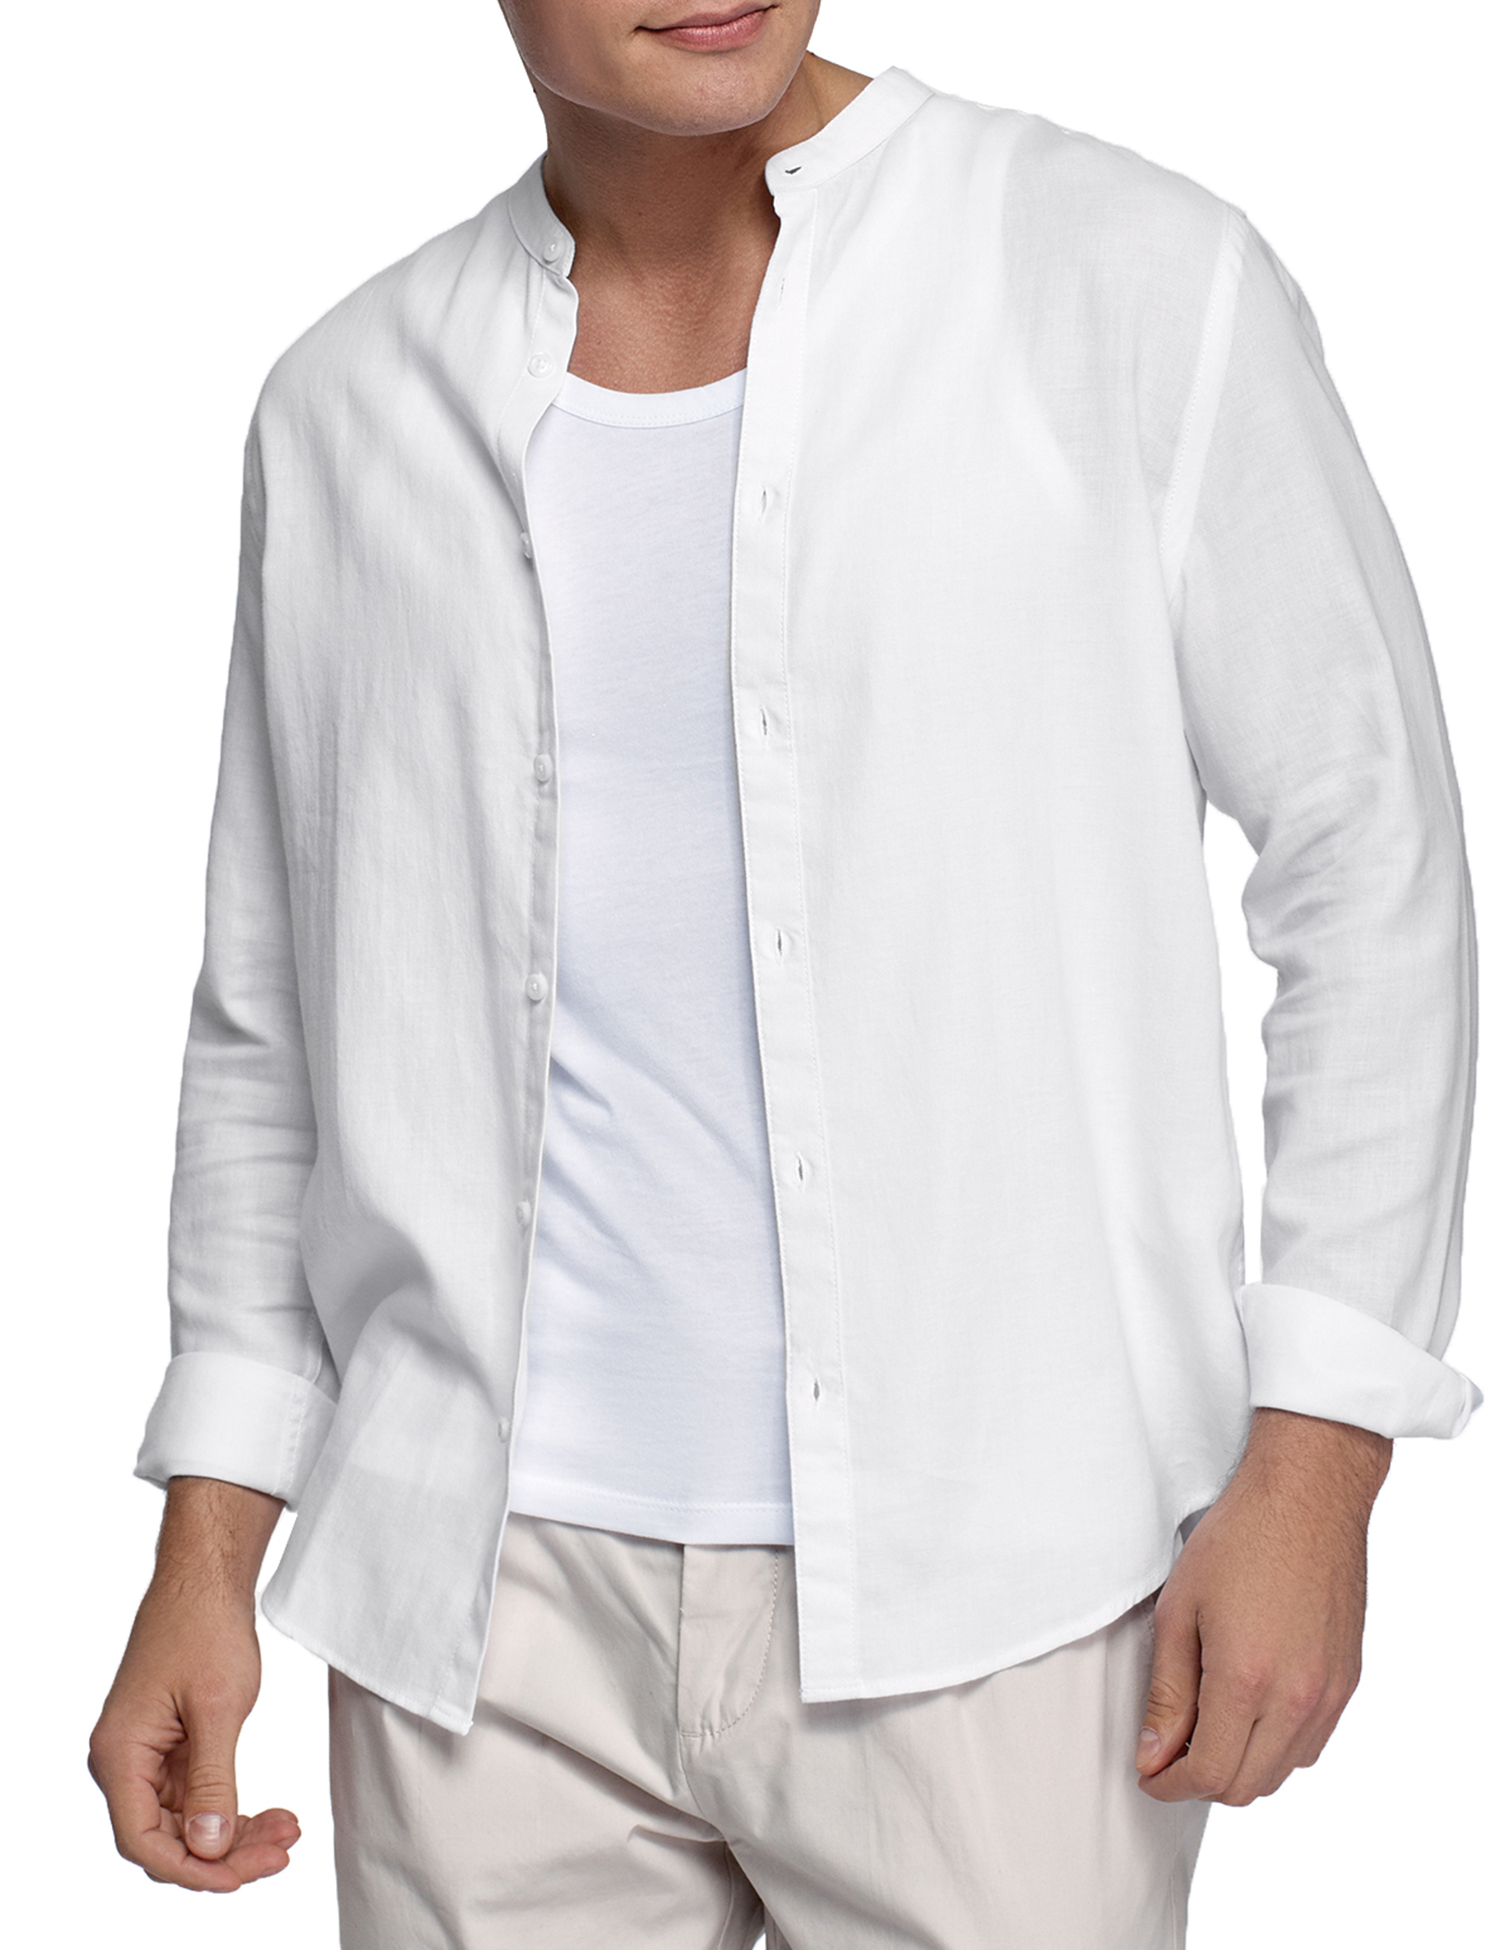 Рубашка мужская oodji 3L310194M-1 белая XL